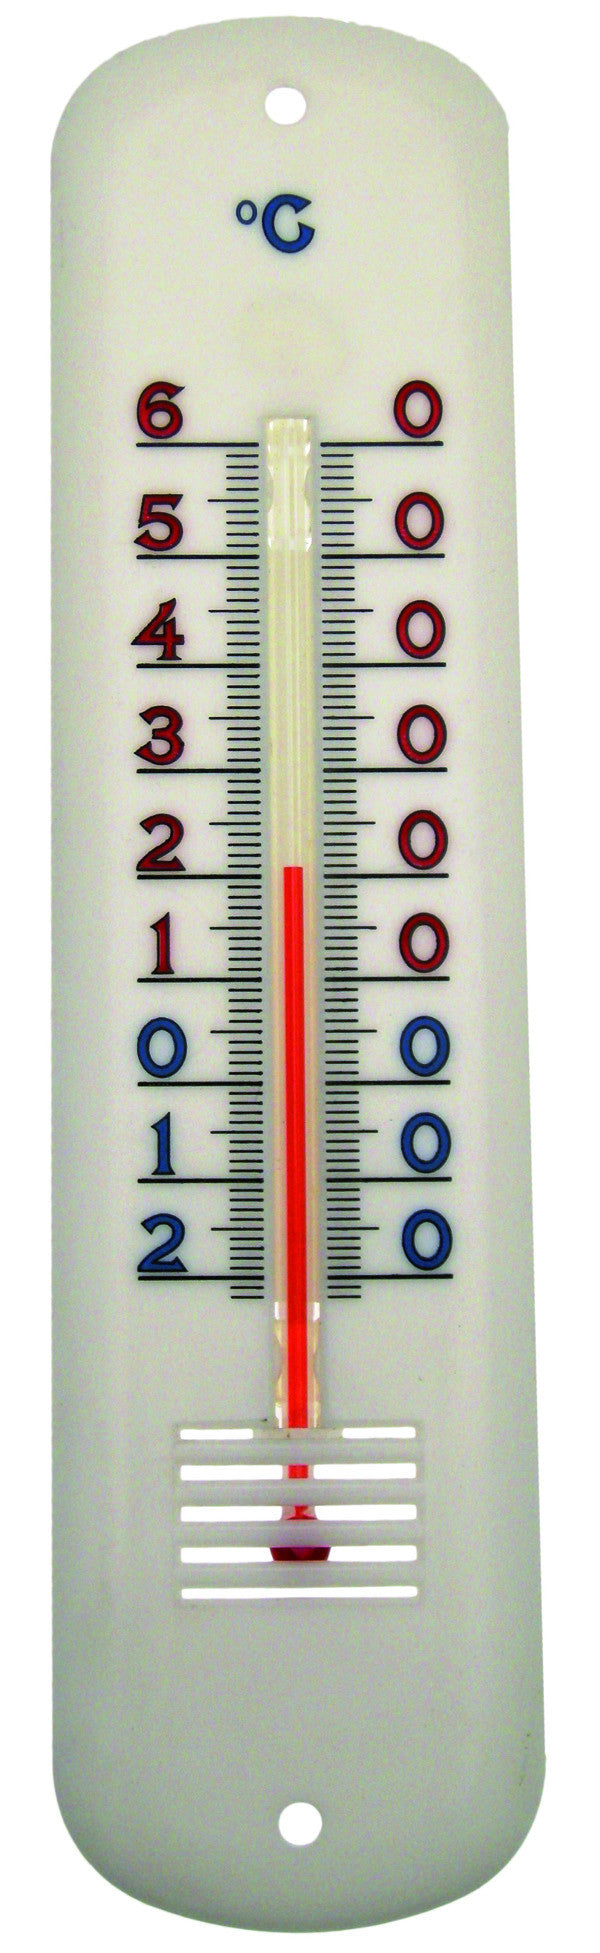 Termómetro -20 a +60°C